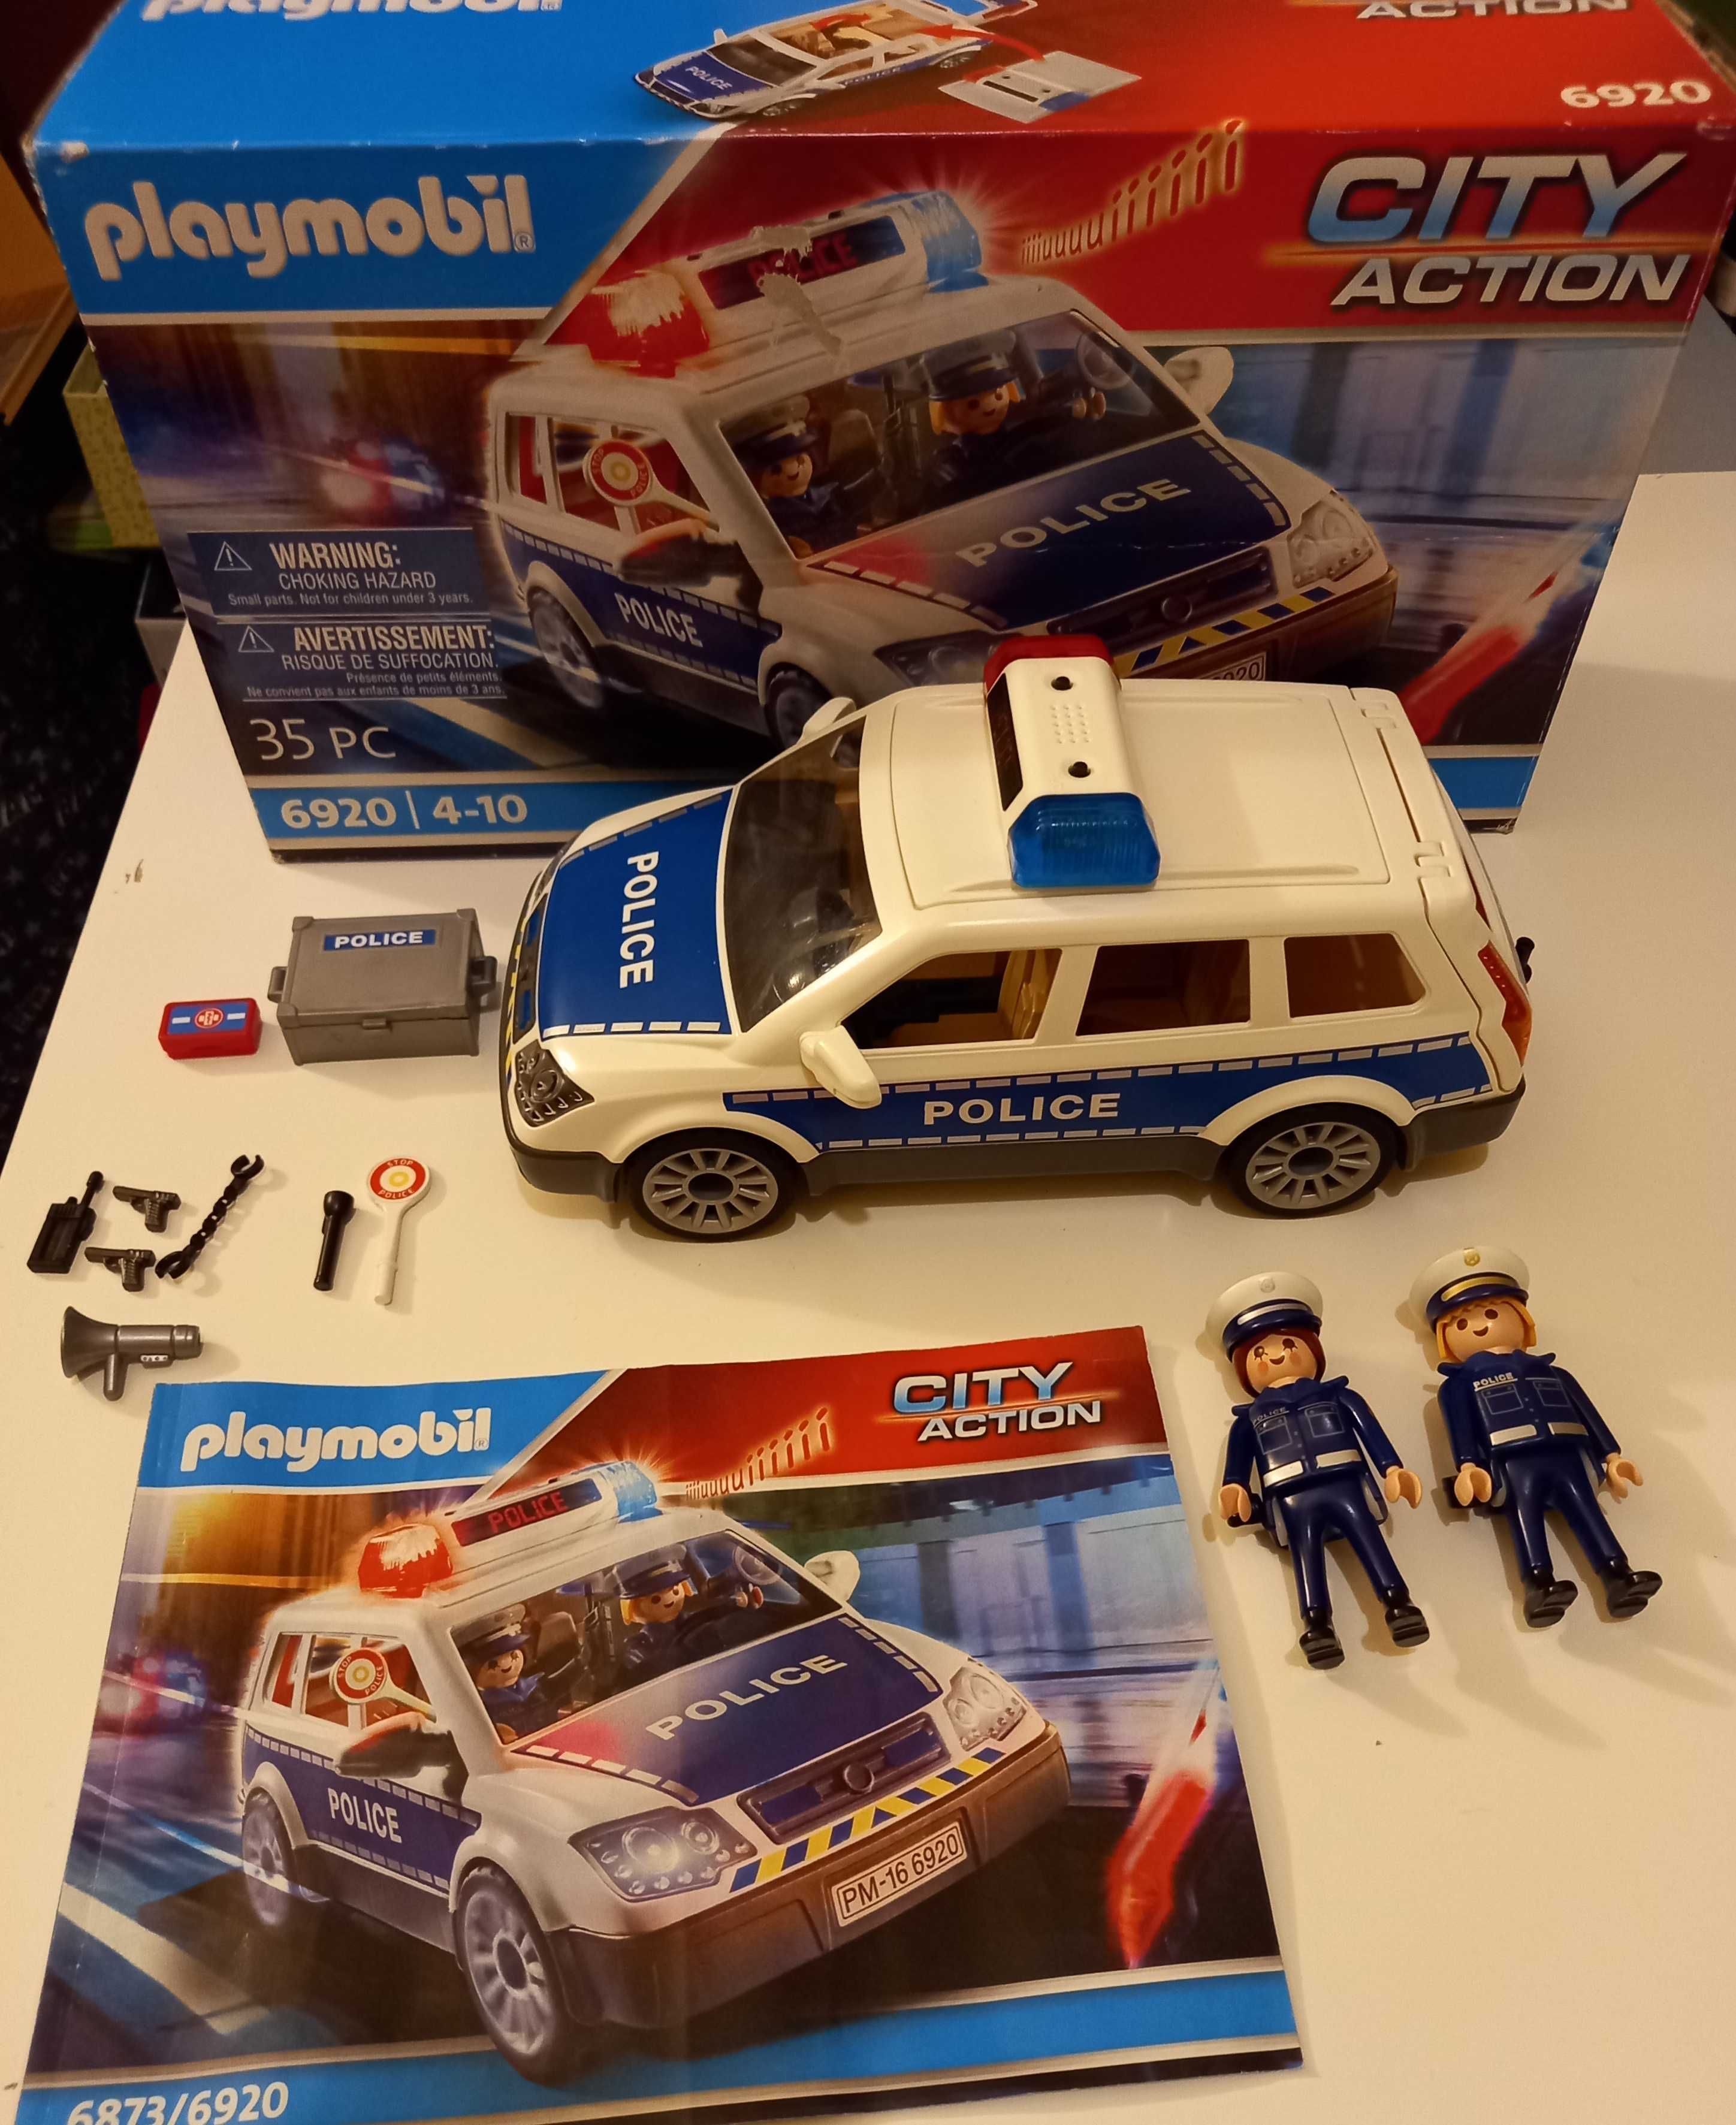 Playmobil samochód policja zestaw 6920 City Action jak nowy dźwięk